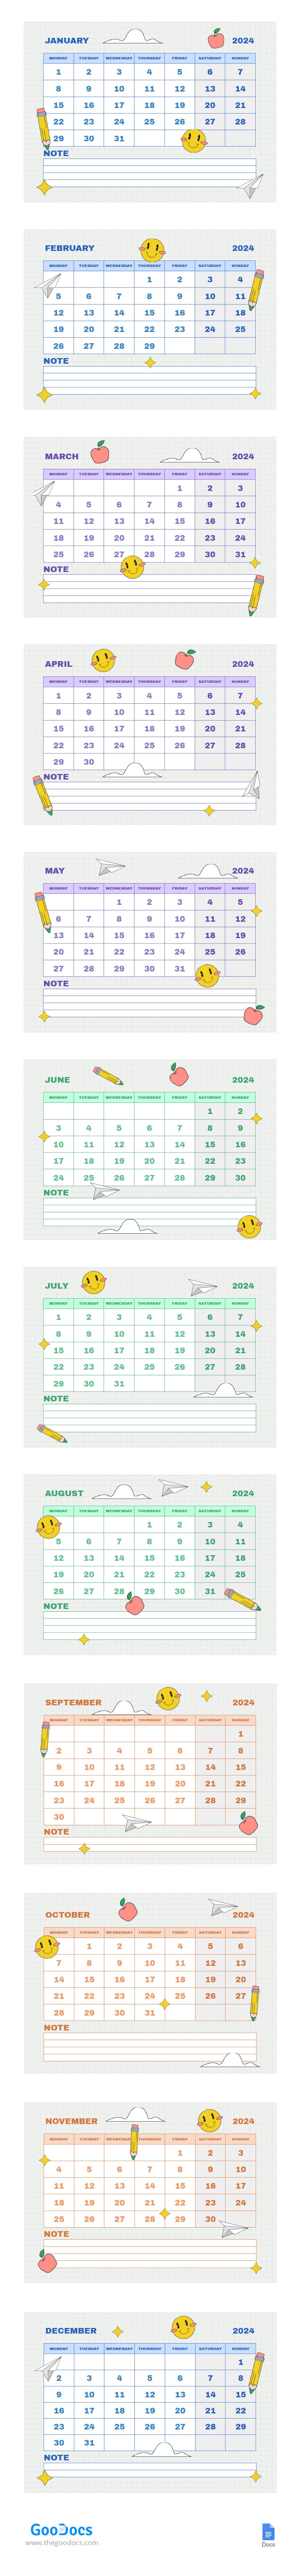 Calendario scolastico a quadretti luminosi - free Google Docs Template - 10066214